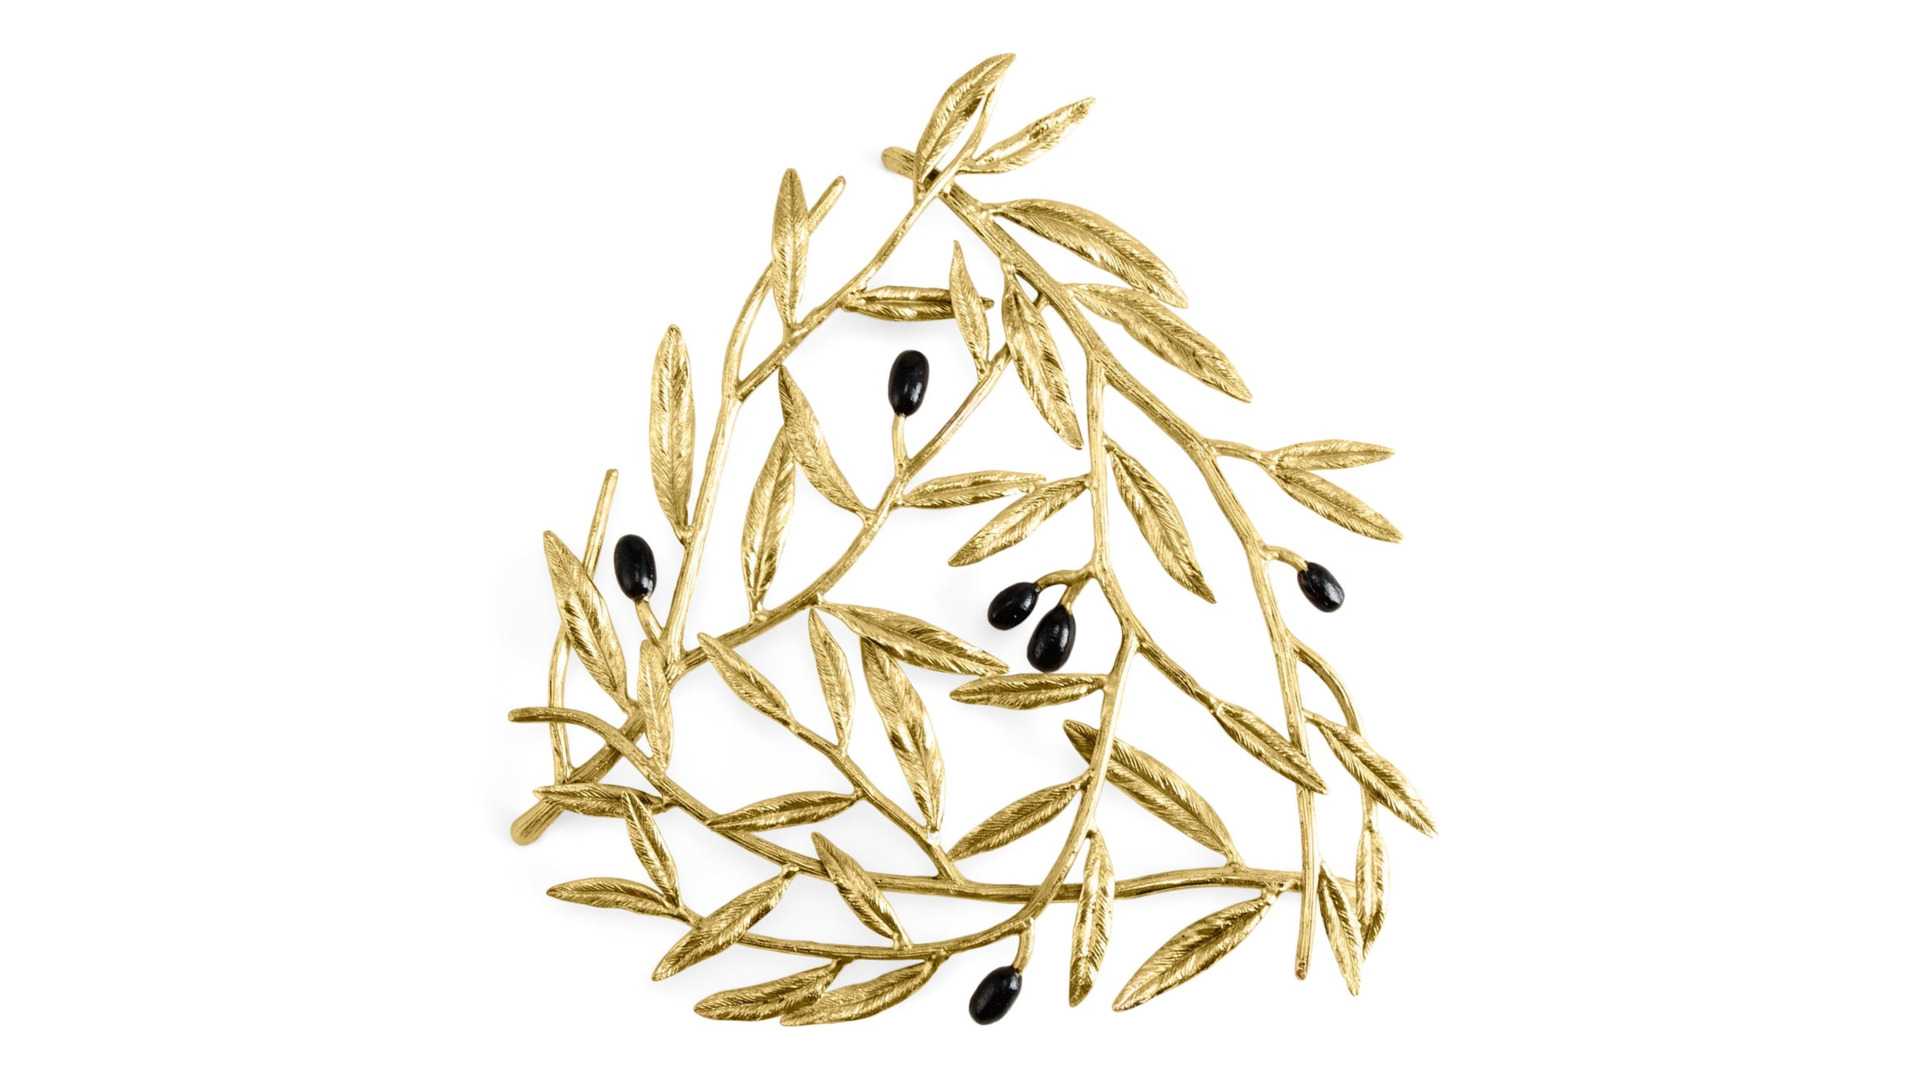 Подставка под горячее Michael Aram Золотая оливковая ветвь 24х22 см, латунь